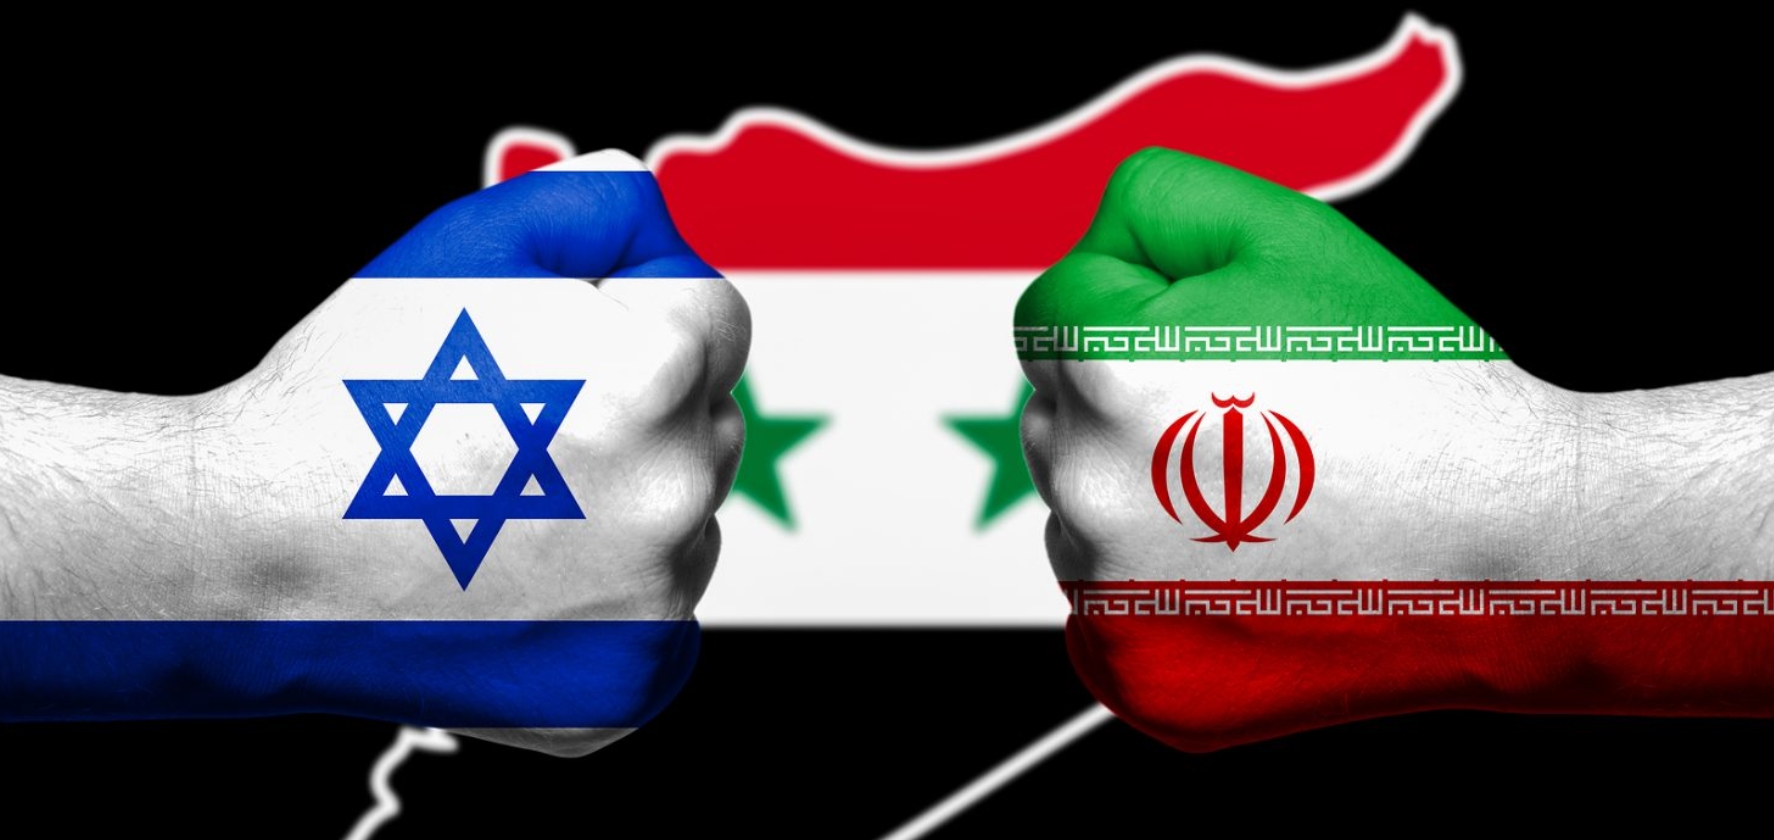 伊朗袭击以色列后 中东进入危险的新阶段